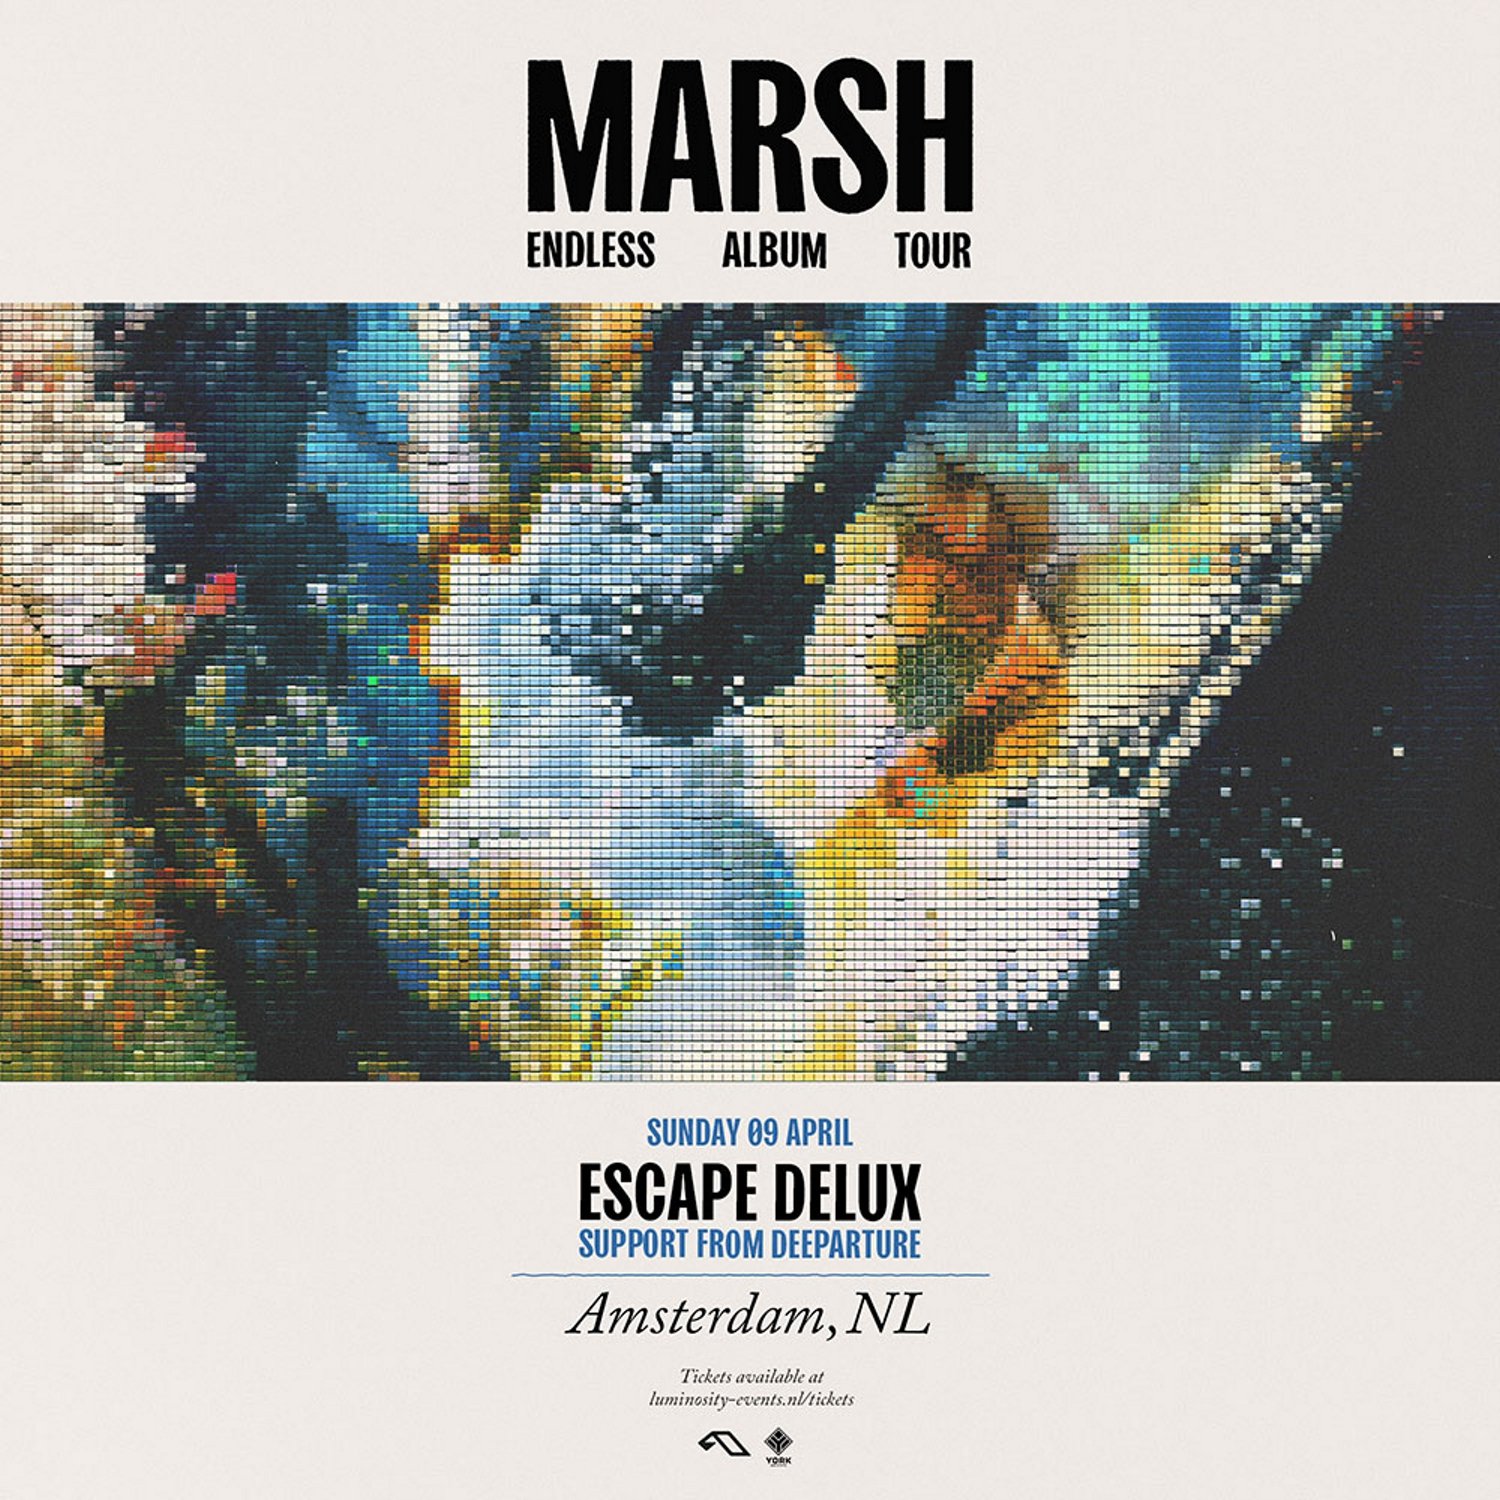 Marsh Endless Album Tour